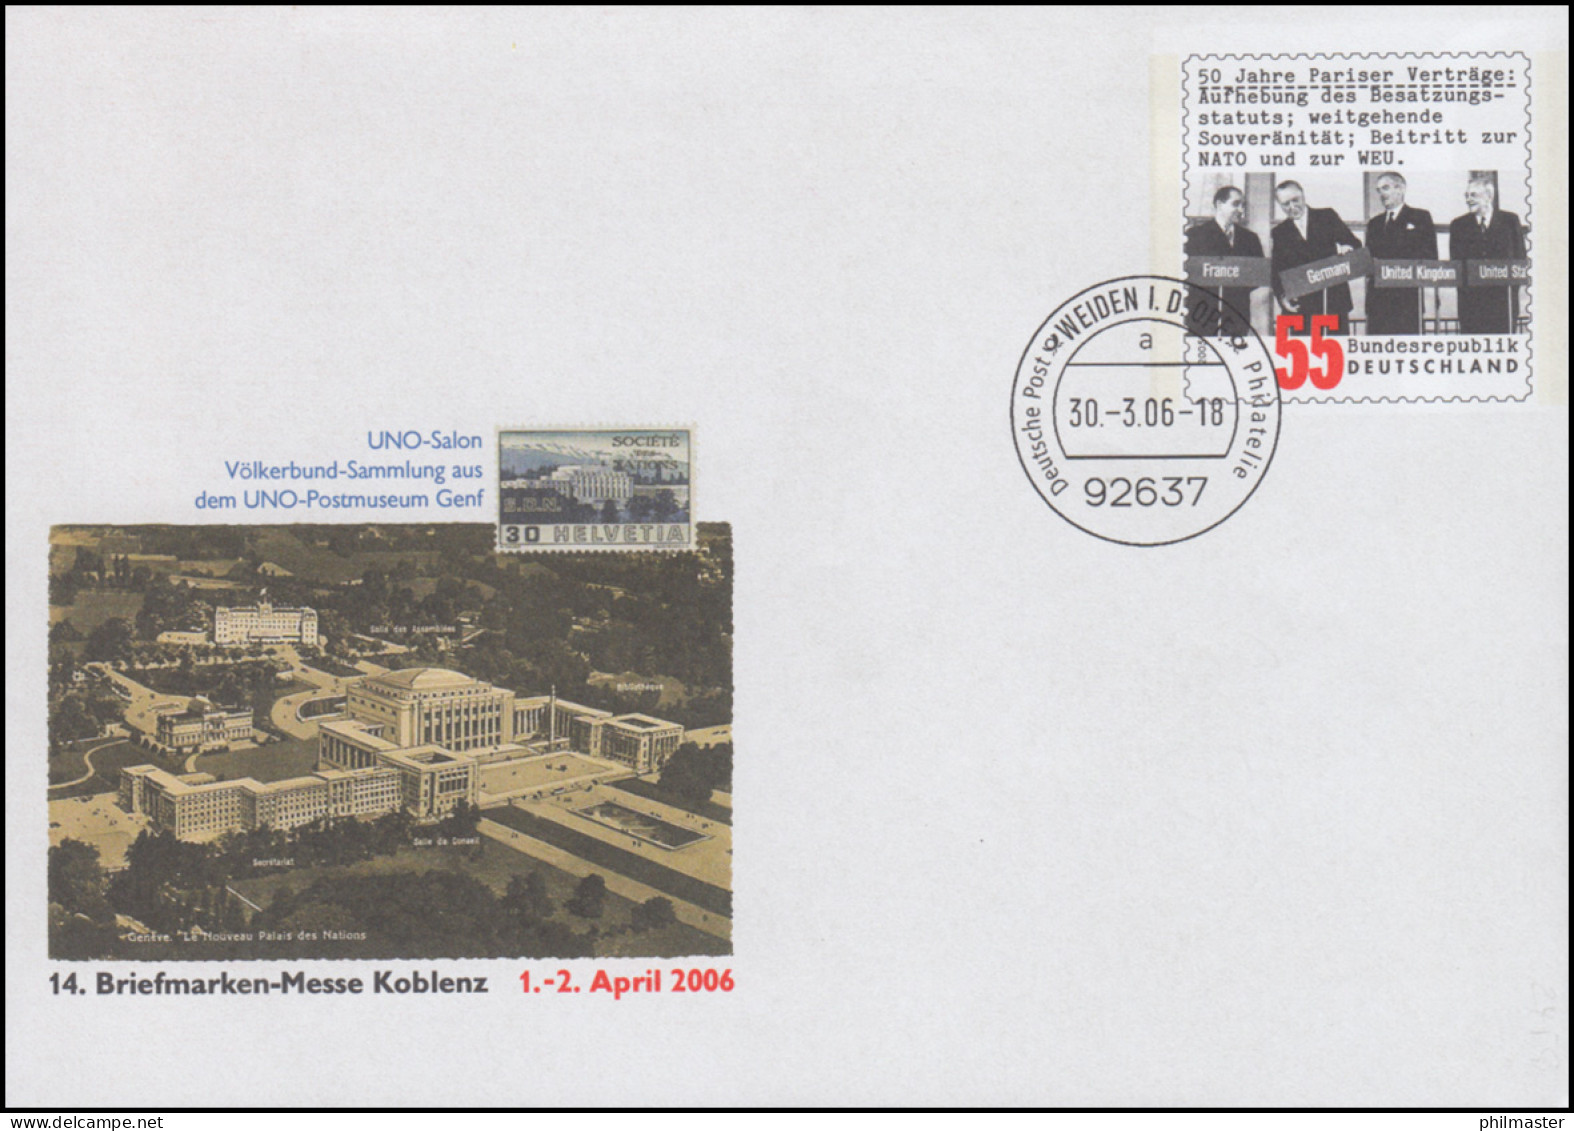 USo 116 Messe Koblenz - UNO Postmuseum Genf 2006, VS-O Weiden 30.3.06 - Umschläge - Ungebraucht